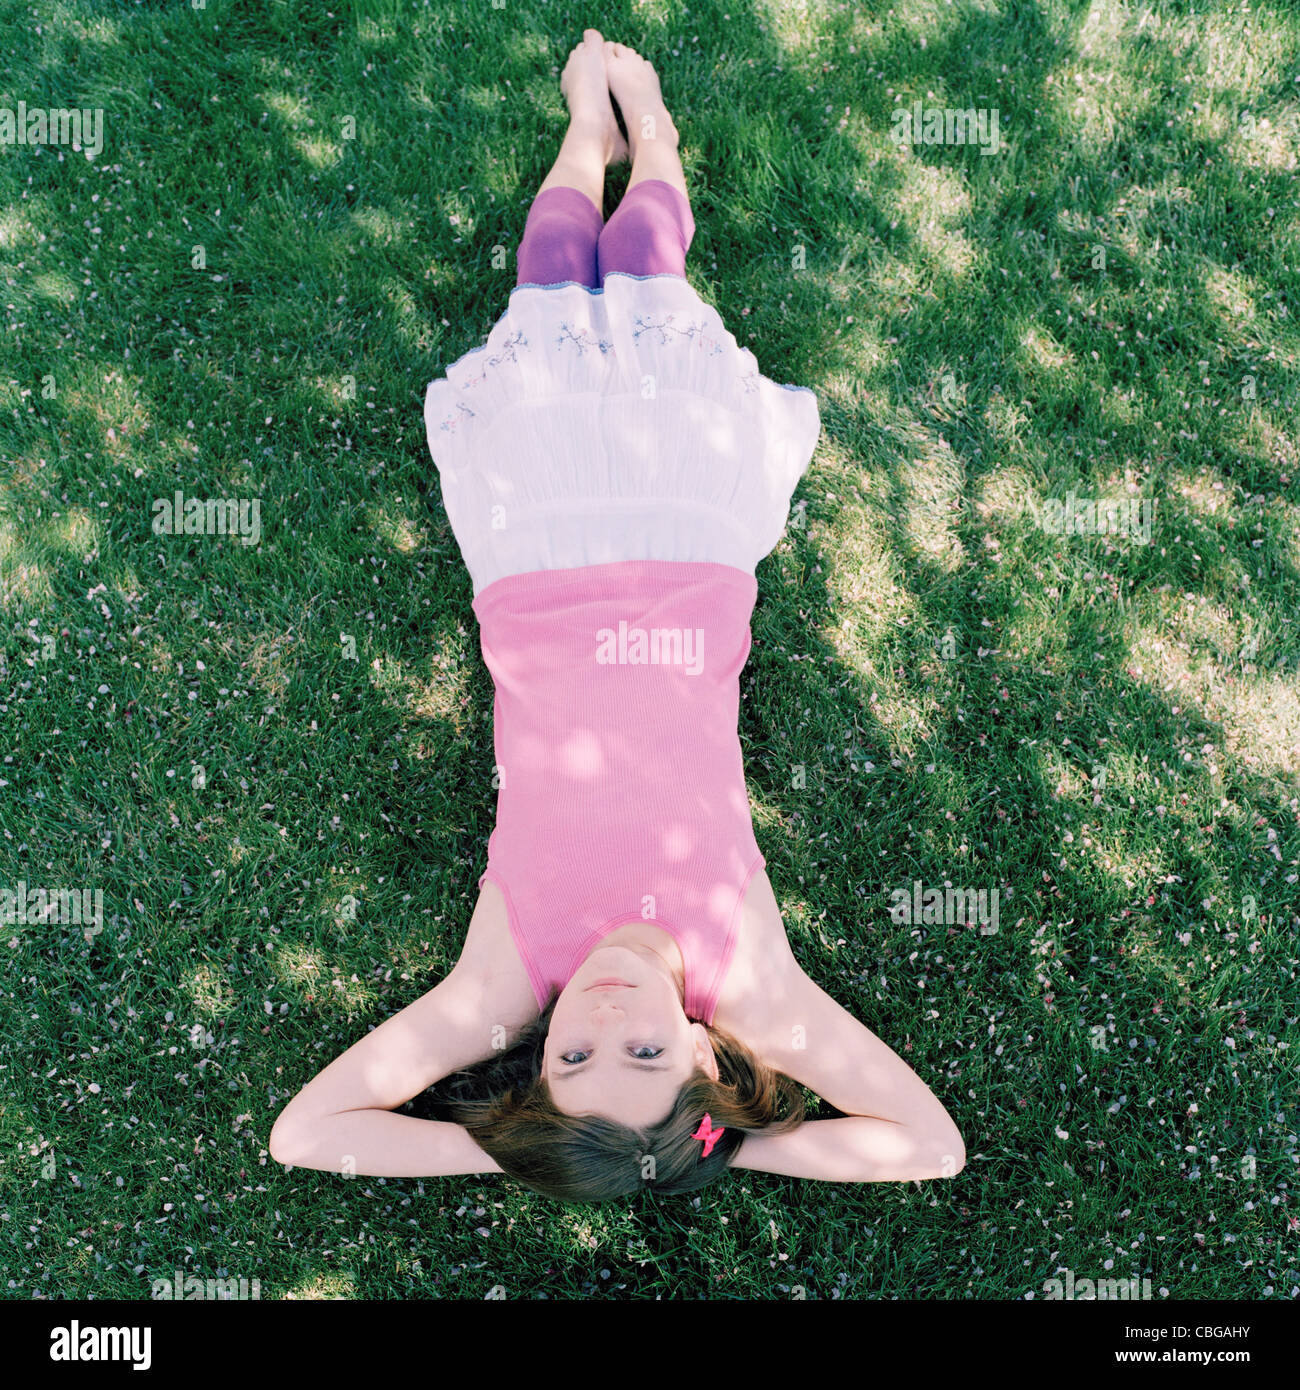 Une jeune fille allongée dans l'herbe avec les mains derrière la tête, à l'envers afficher Banque D'Images